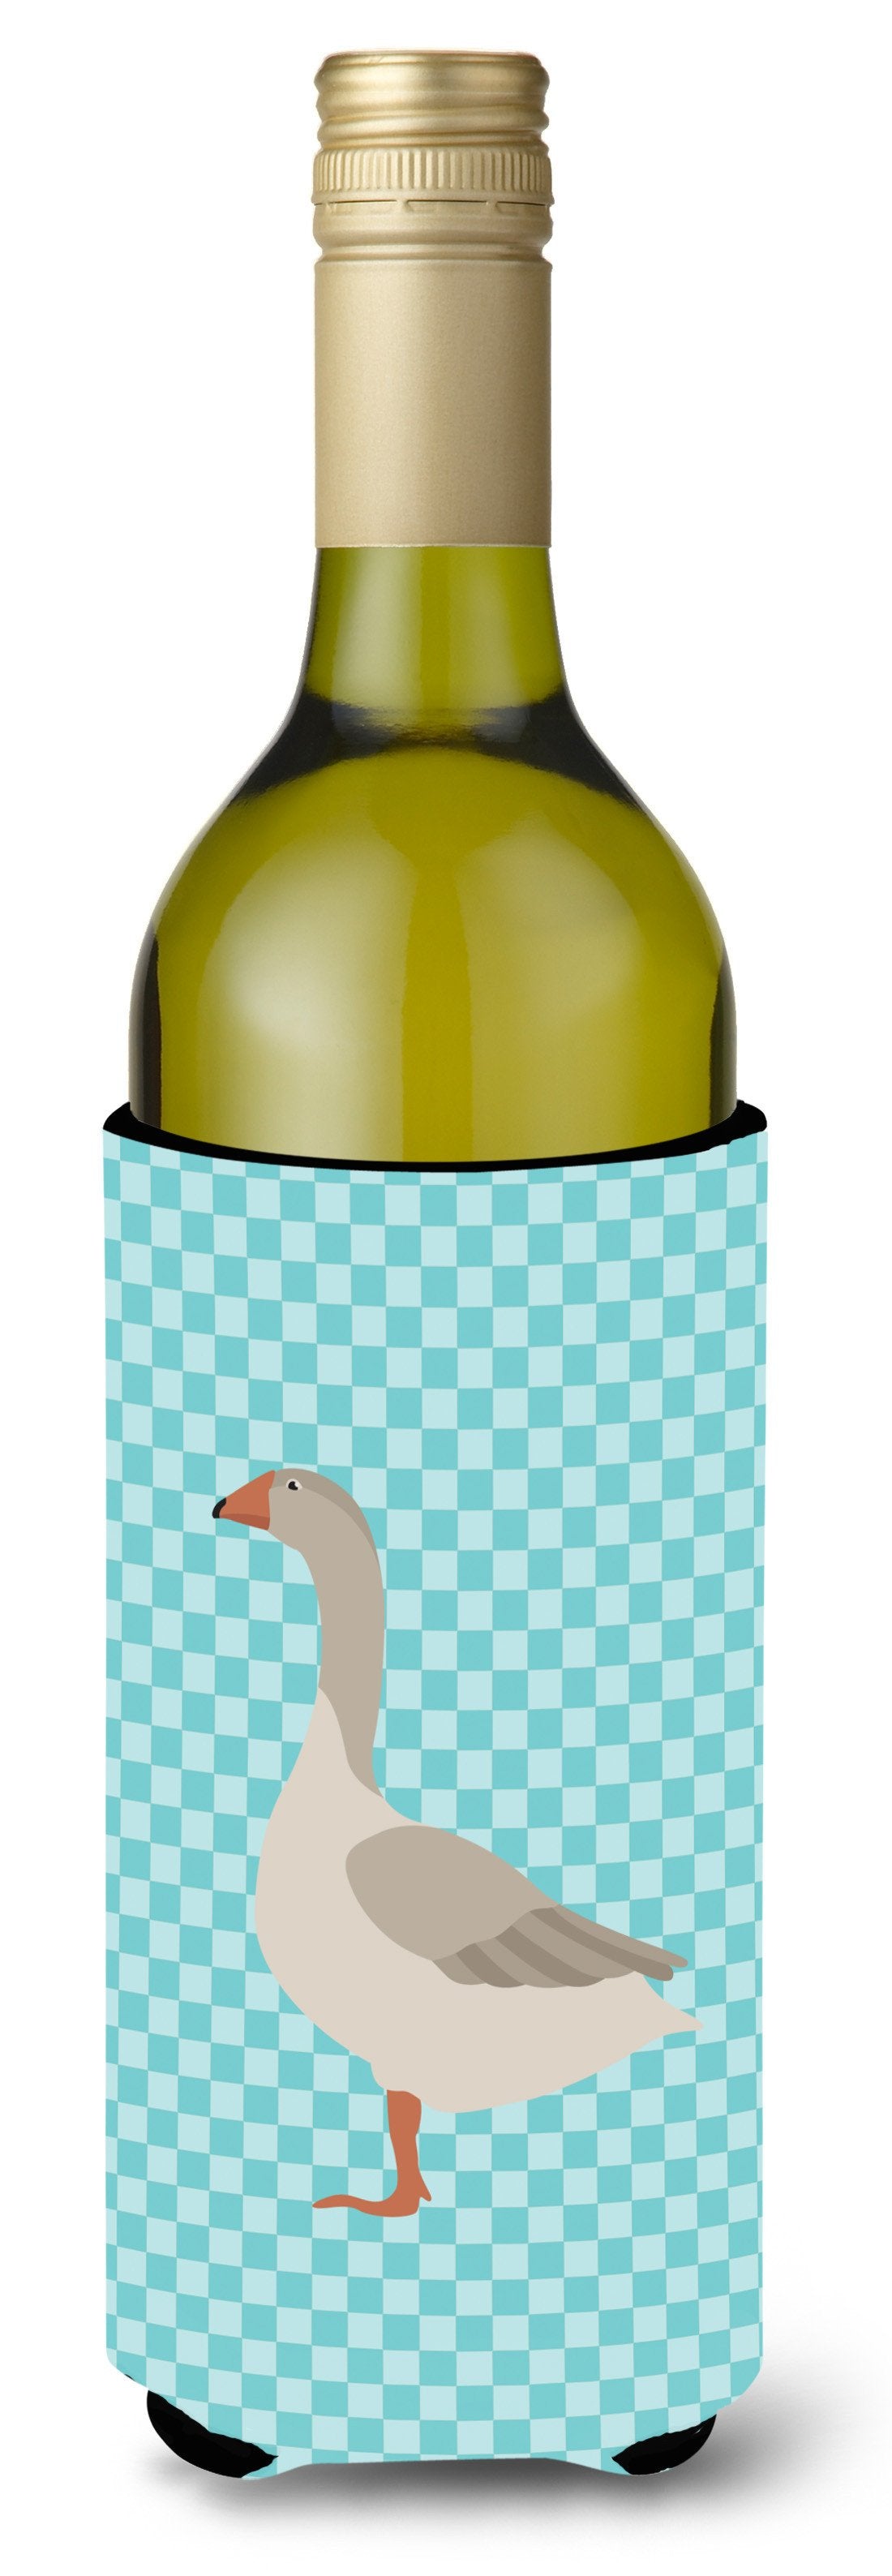 Steinbacher Goose Blue Check Wine Bottle Beverge Insulator Hugger BB8068LITERK by Caroline's Treasures